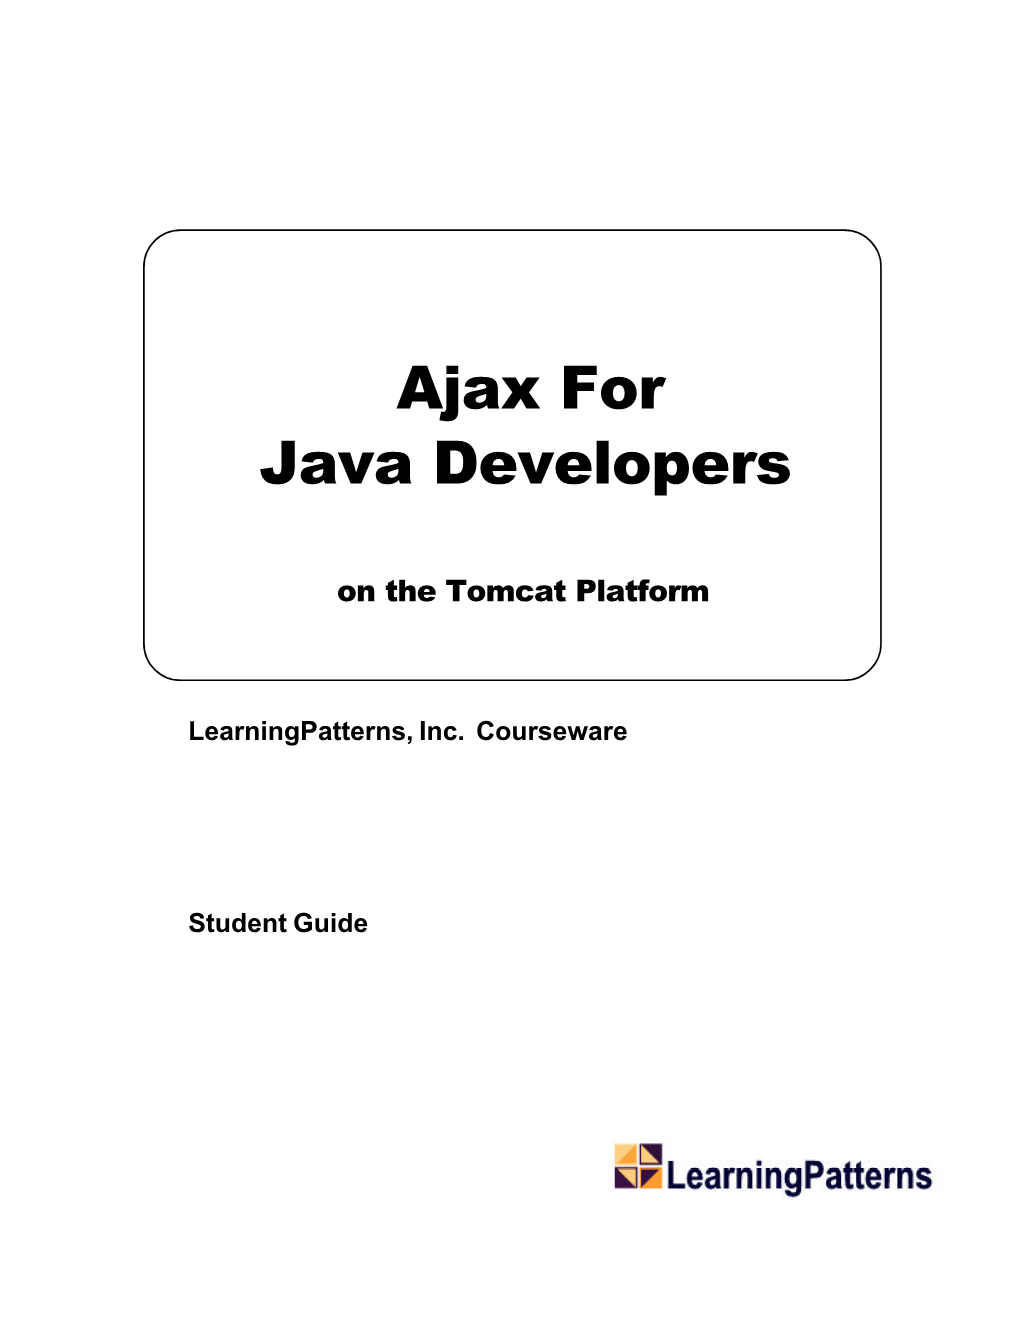 Ajax for Java Developers